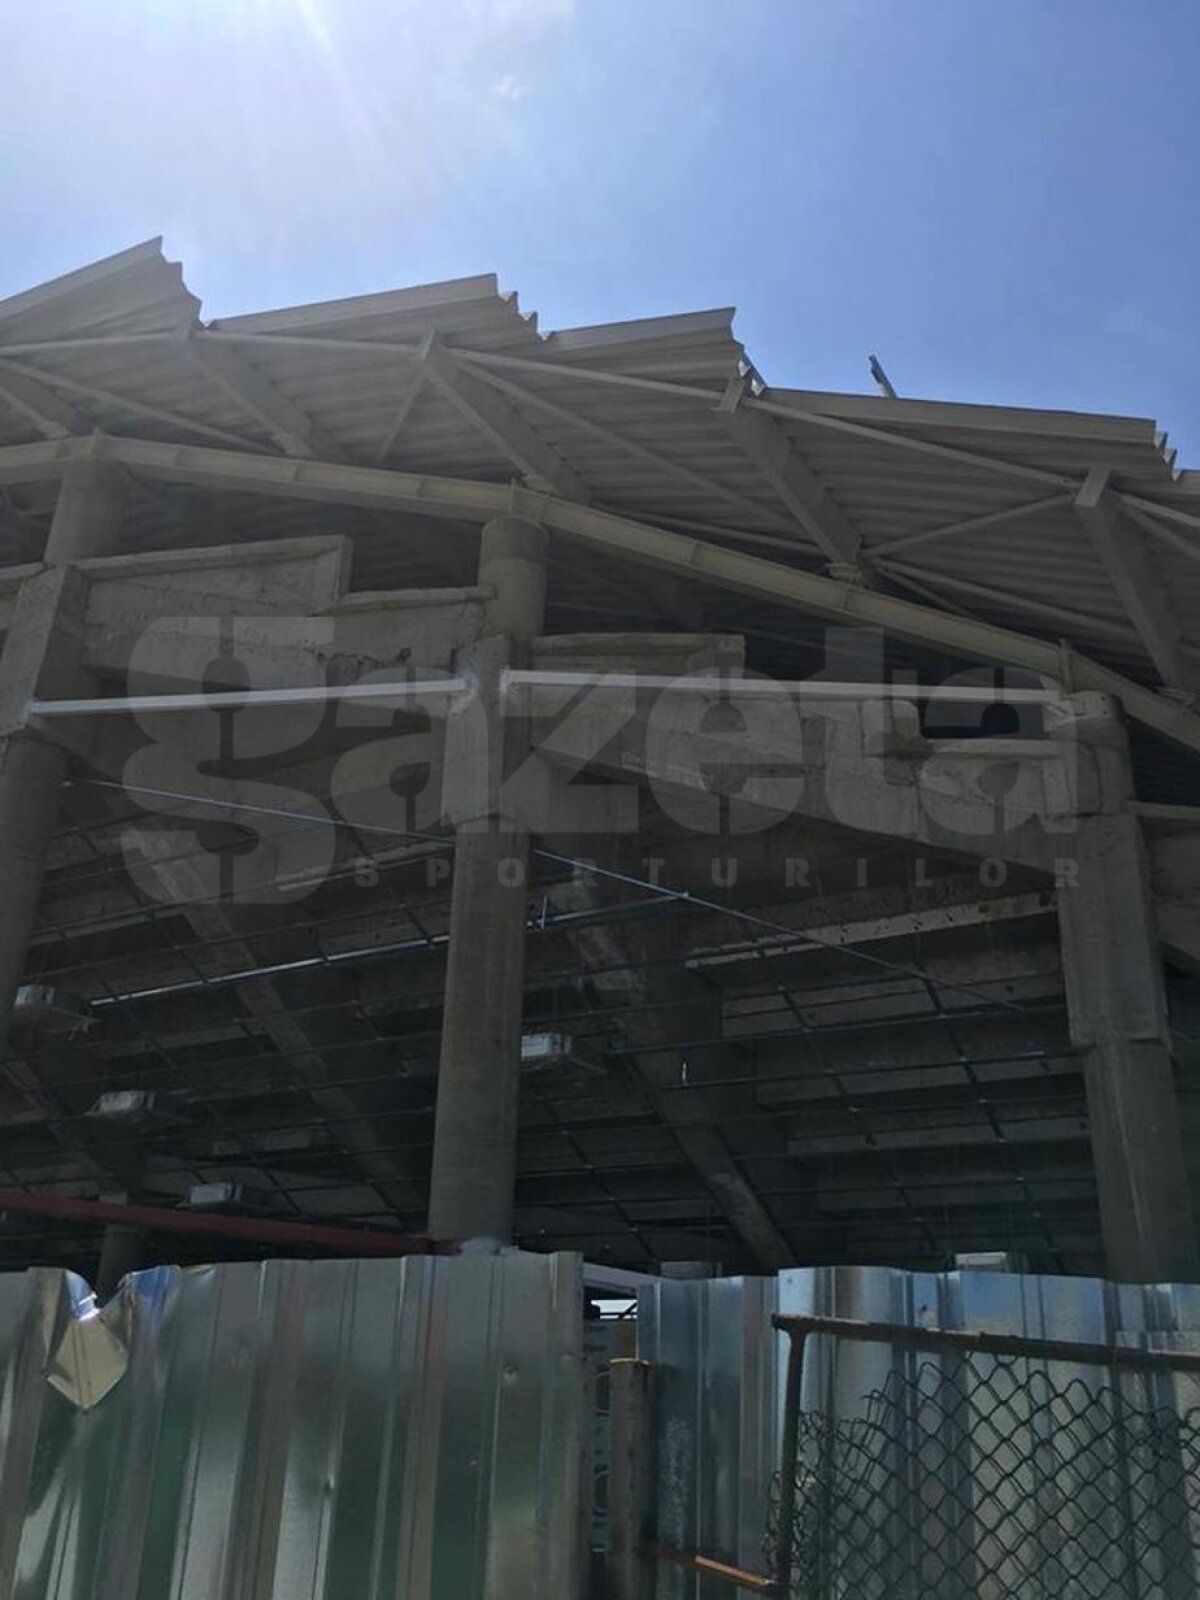 EXCLUSIV VIDEO + FOTO Noi imagini de la unul dintre stadioanele care se construiesc în România! Se pun la punct ultimele detalii la exterior 